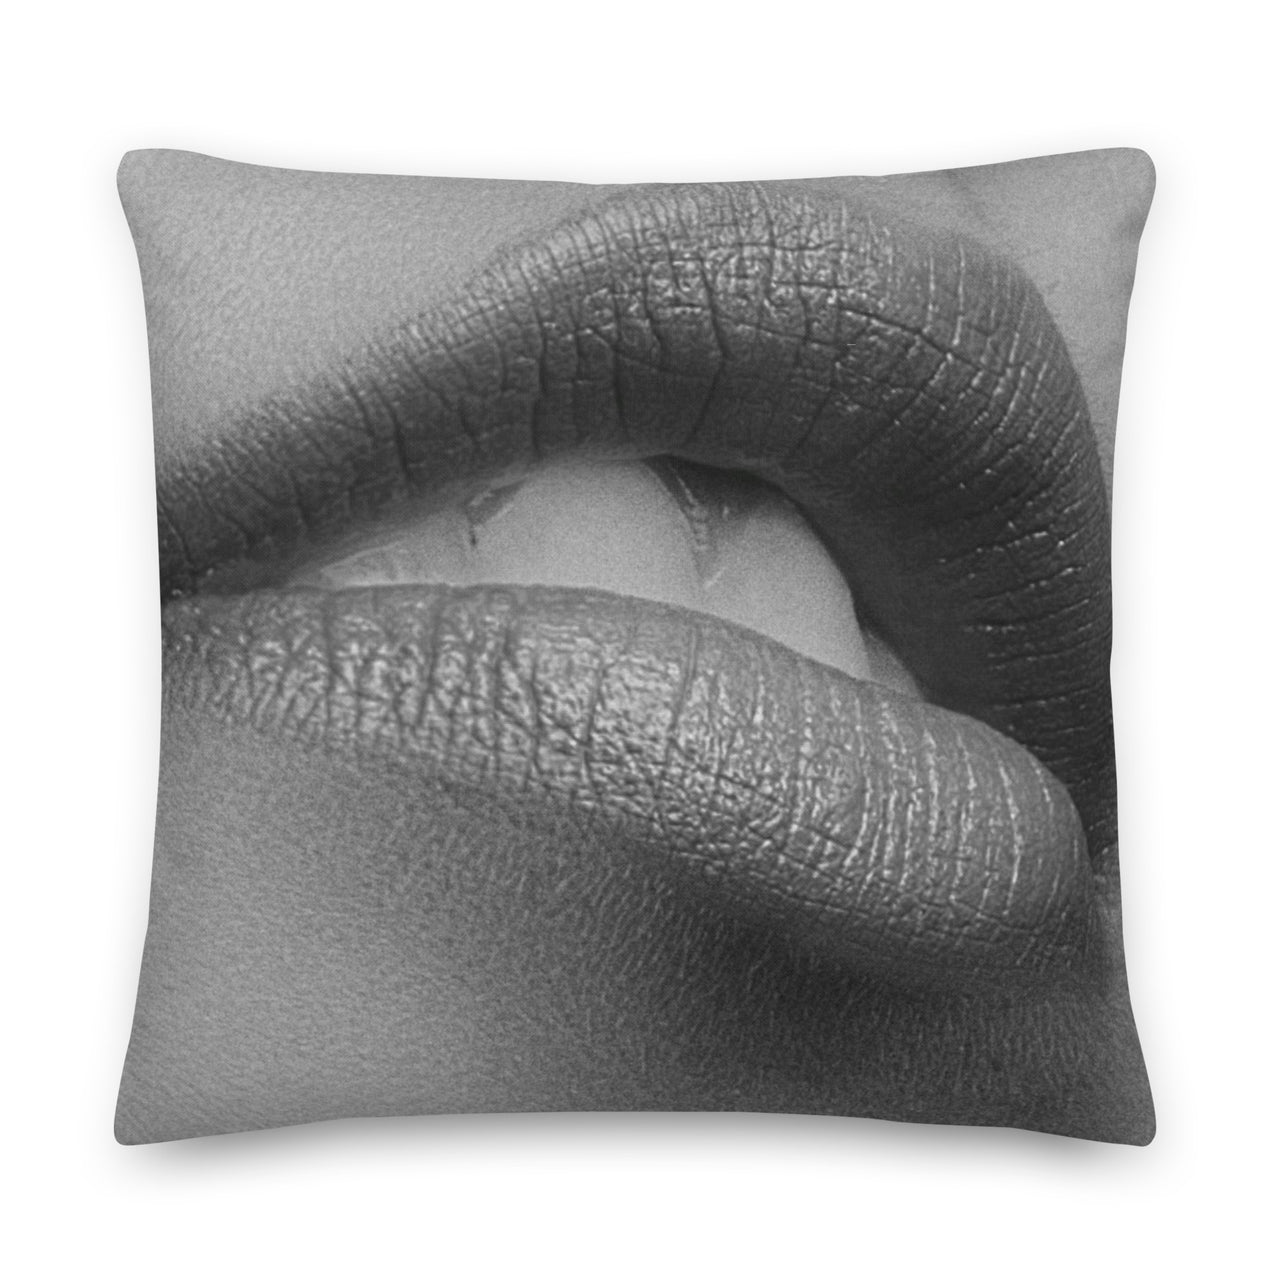 Pillow Talk Premium Pillow a Sensual Erotic Sex Room Accent